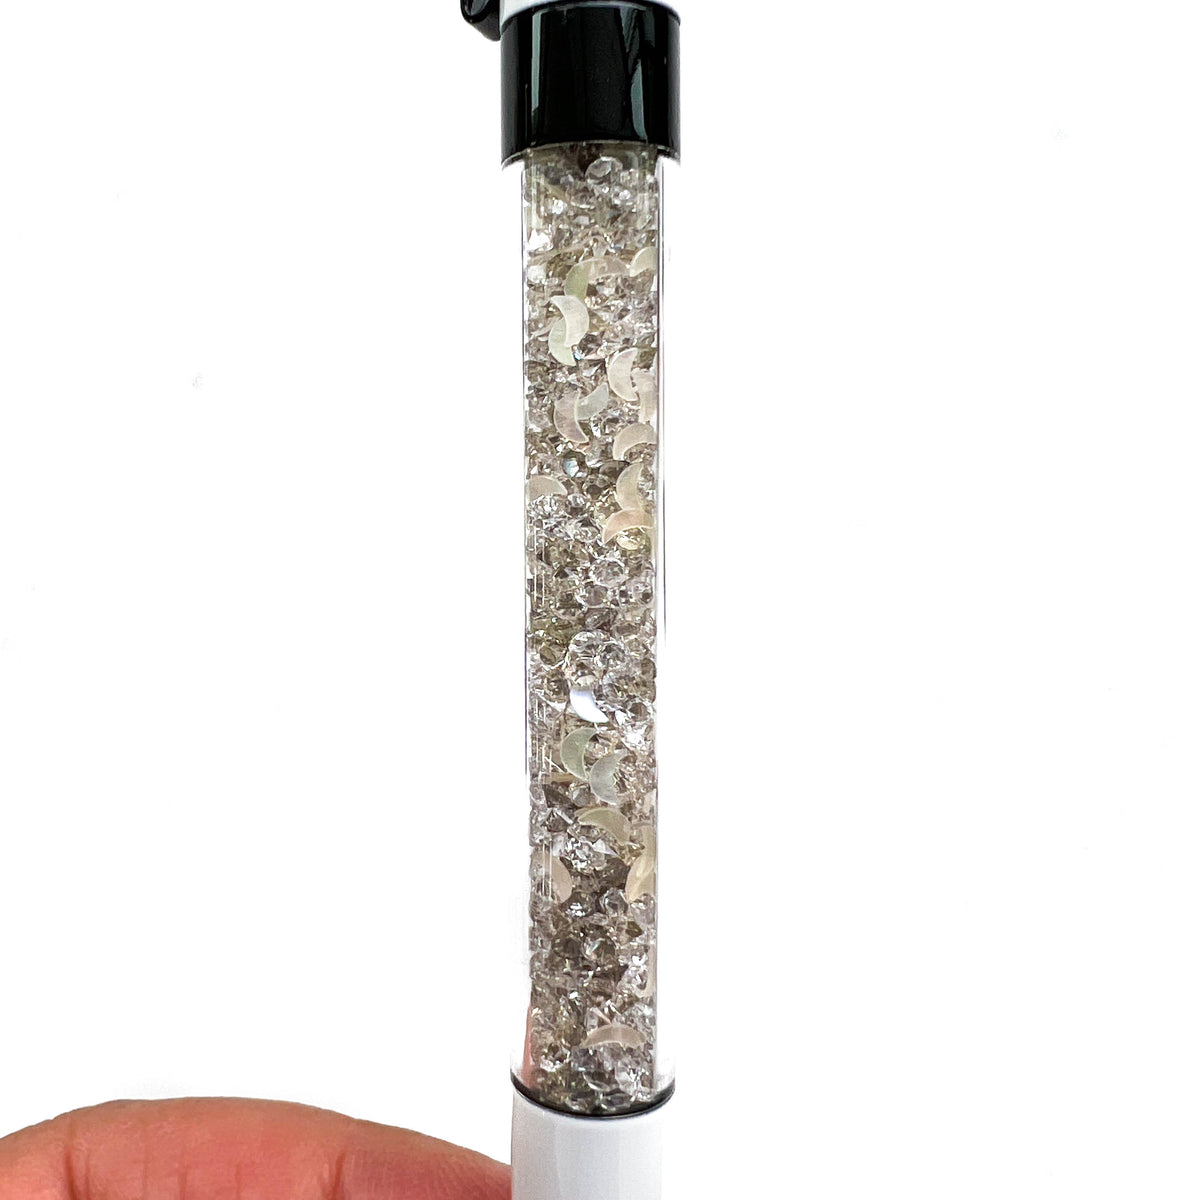 Moondust Crystal VBPen | limited pen